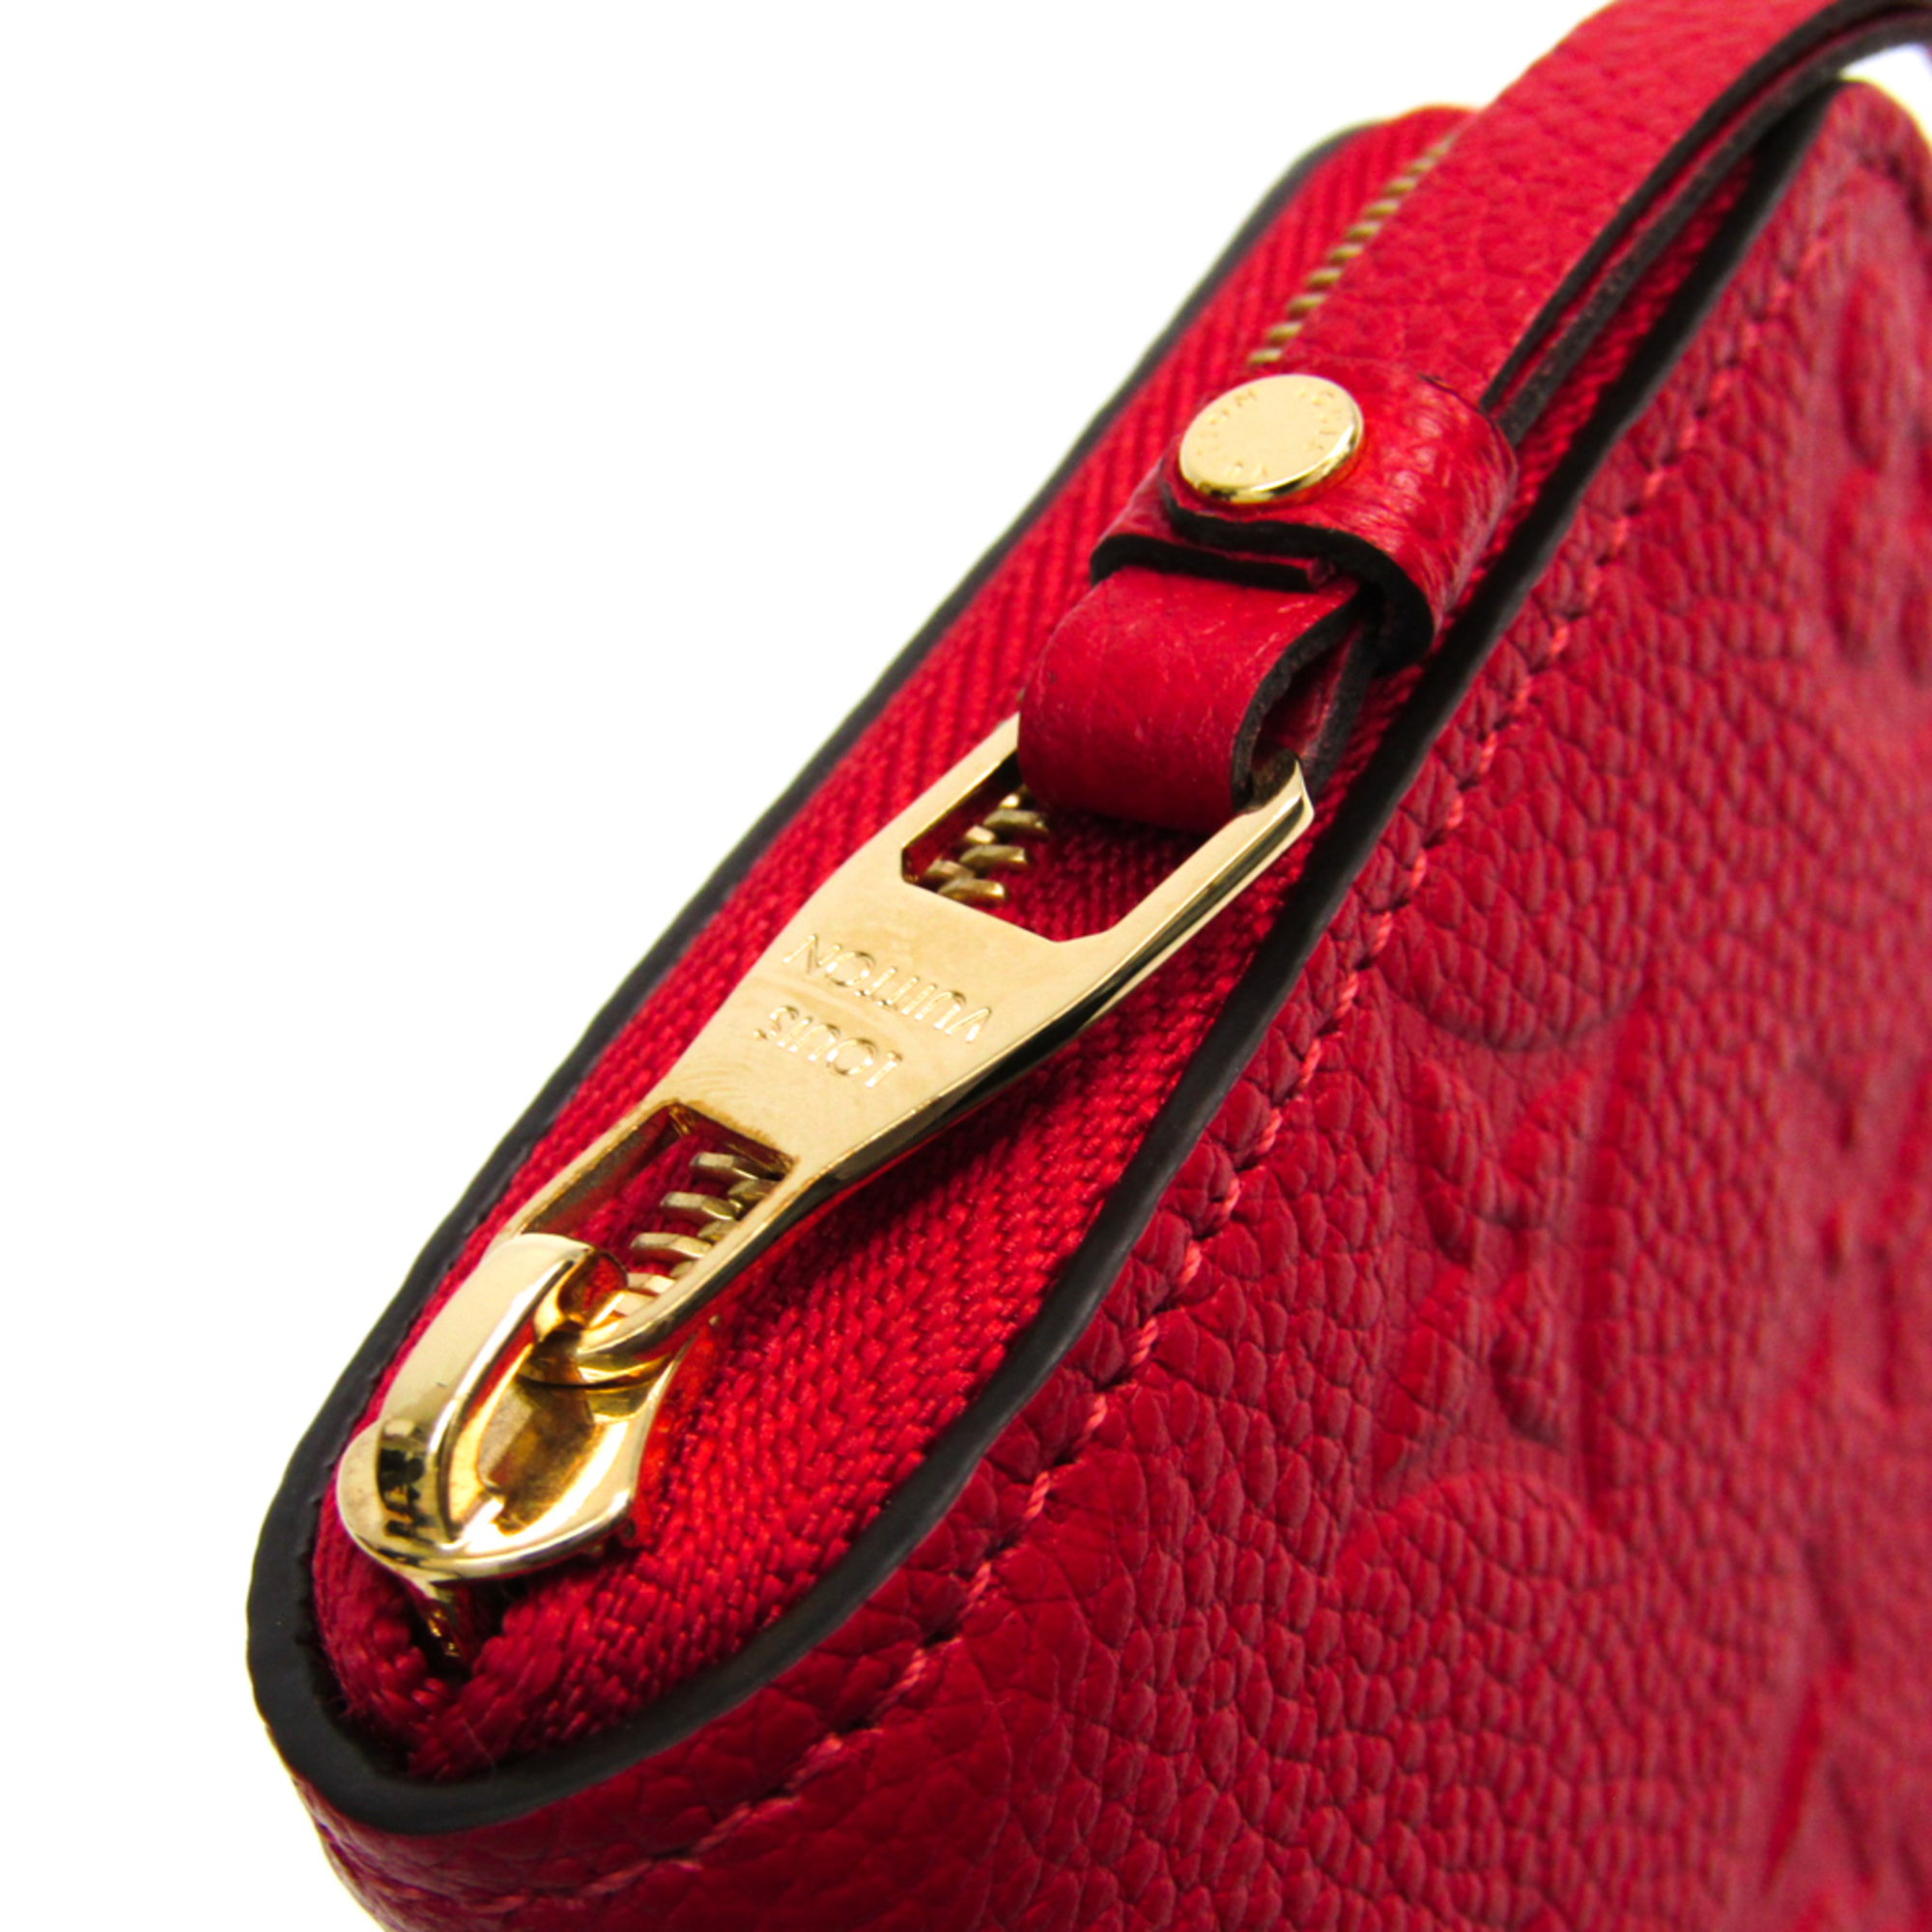 Louis Vuitton Monogram Empreinte Zippy-coin-purse M63696 Women's Monogram Empreinte Coin Purse/coin Case Sacrlet